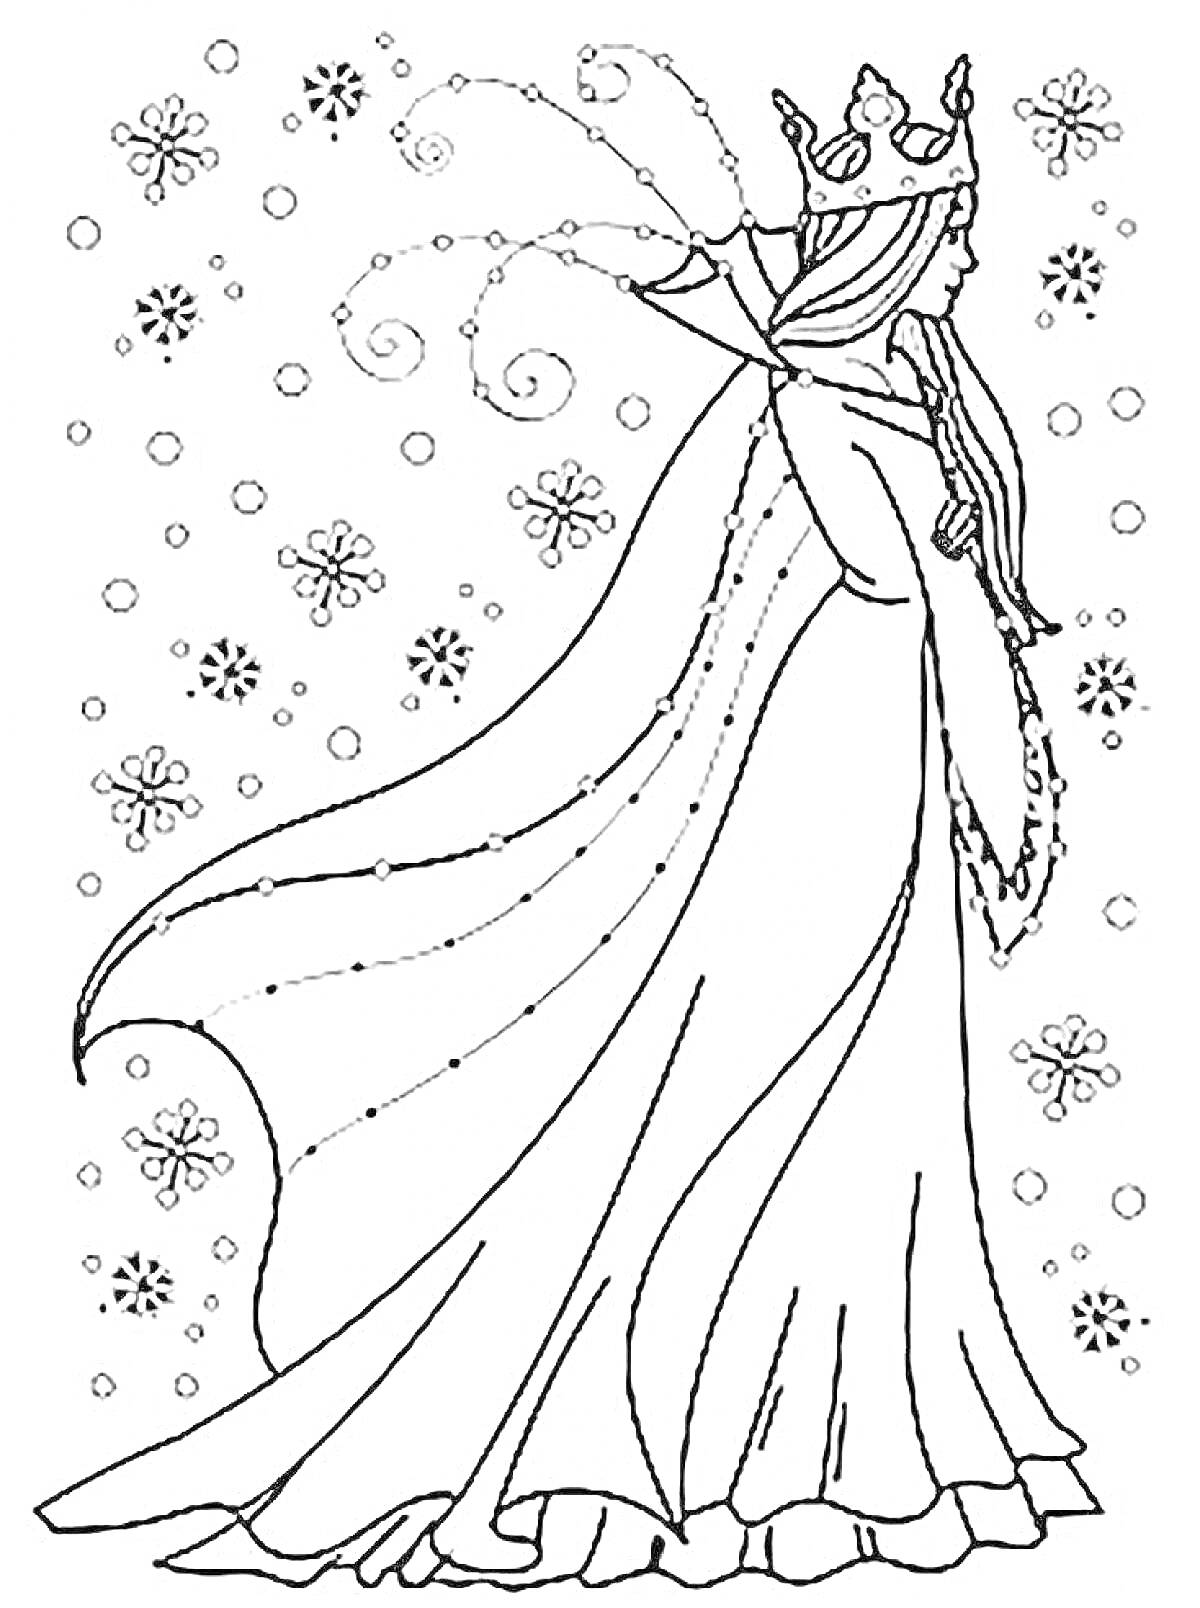 Раскраска Снежная королева в короне с длинным платьем и развевающимся плащом, окруженная снежинками